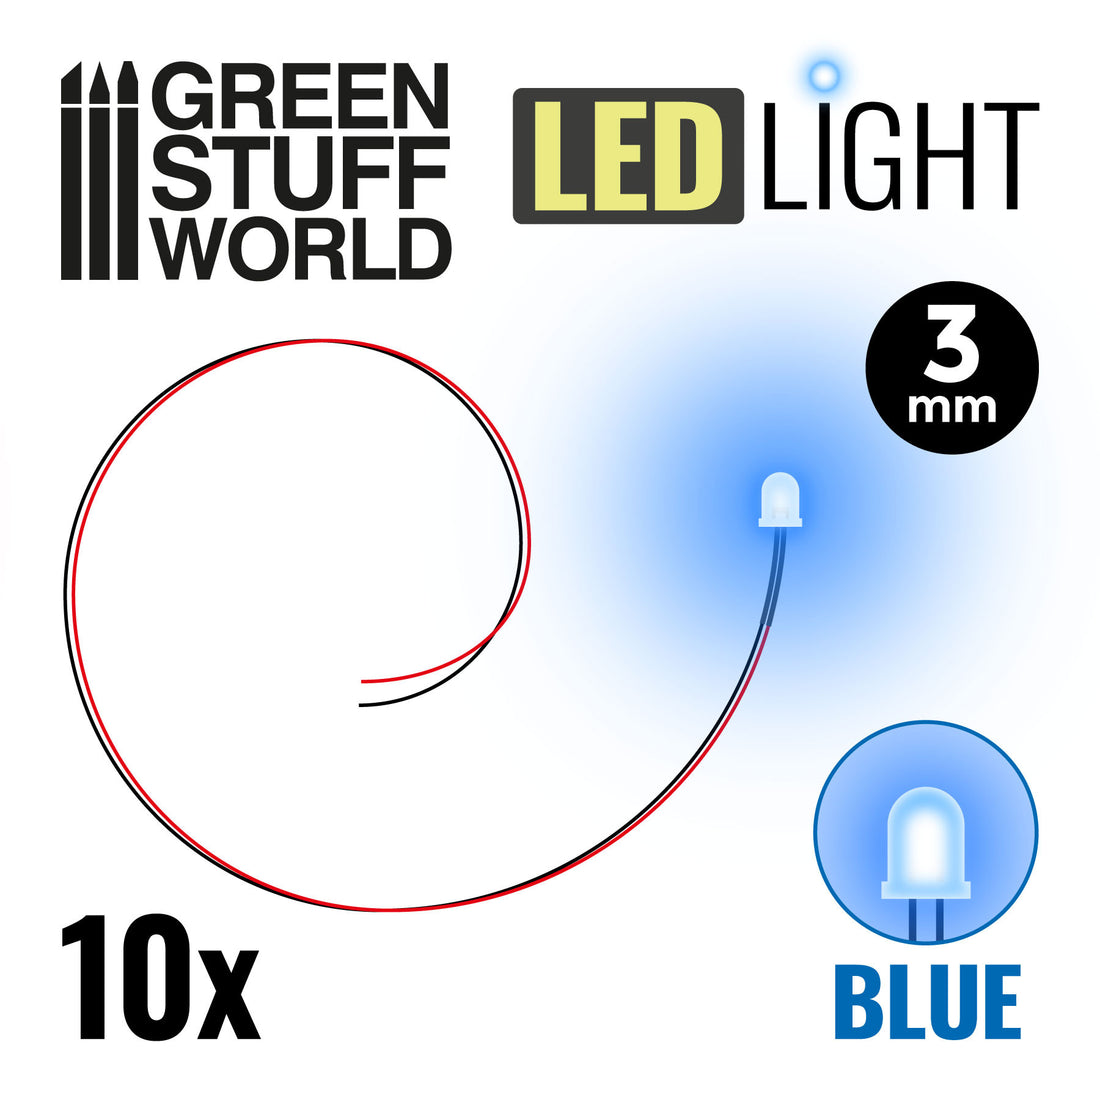 LED Lights – red/blue – 3mm